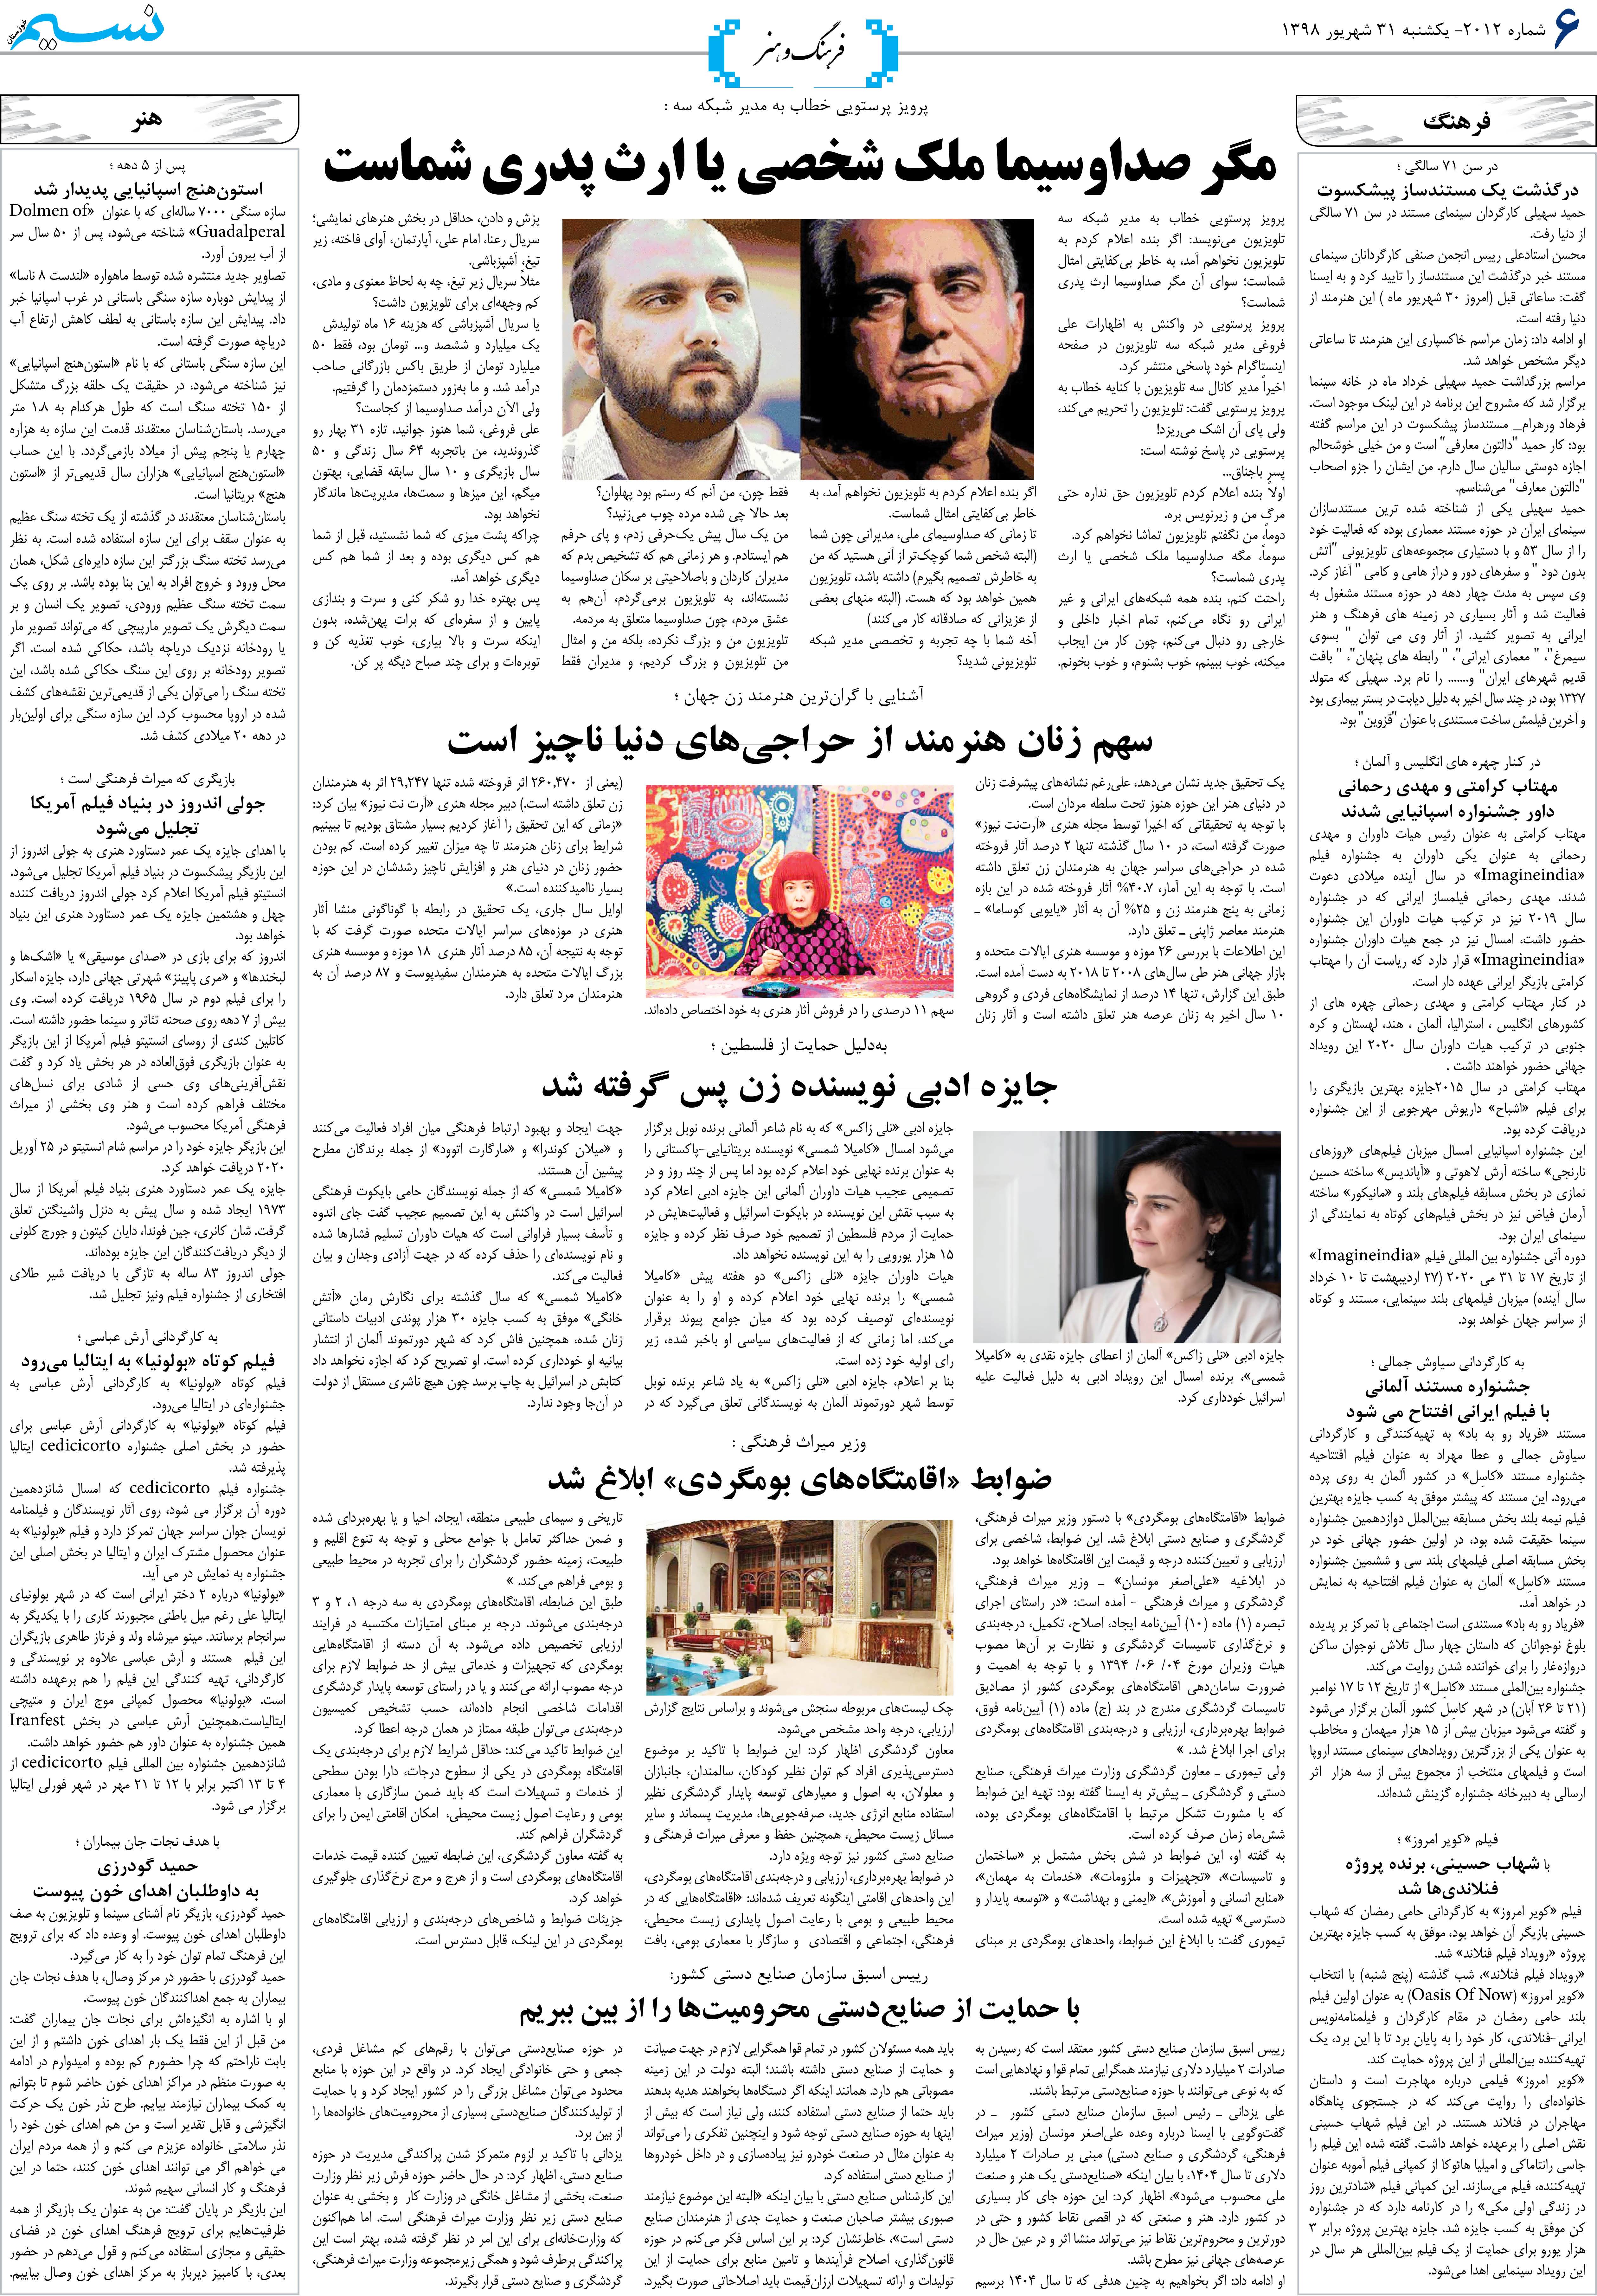 صفحه فرهنگ و هنر روزنامه نسیم شماره 2012